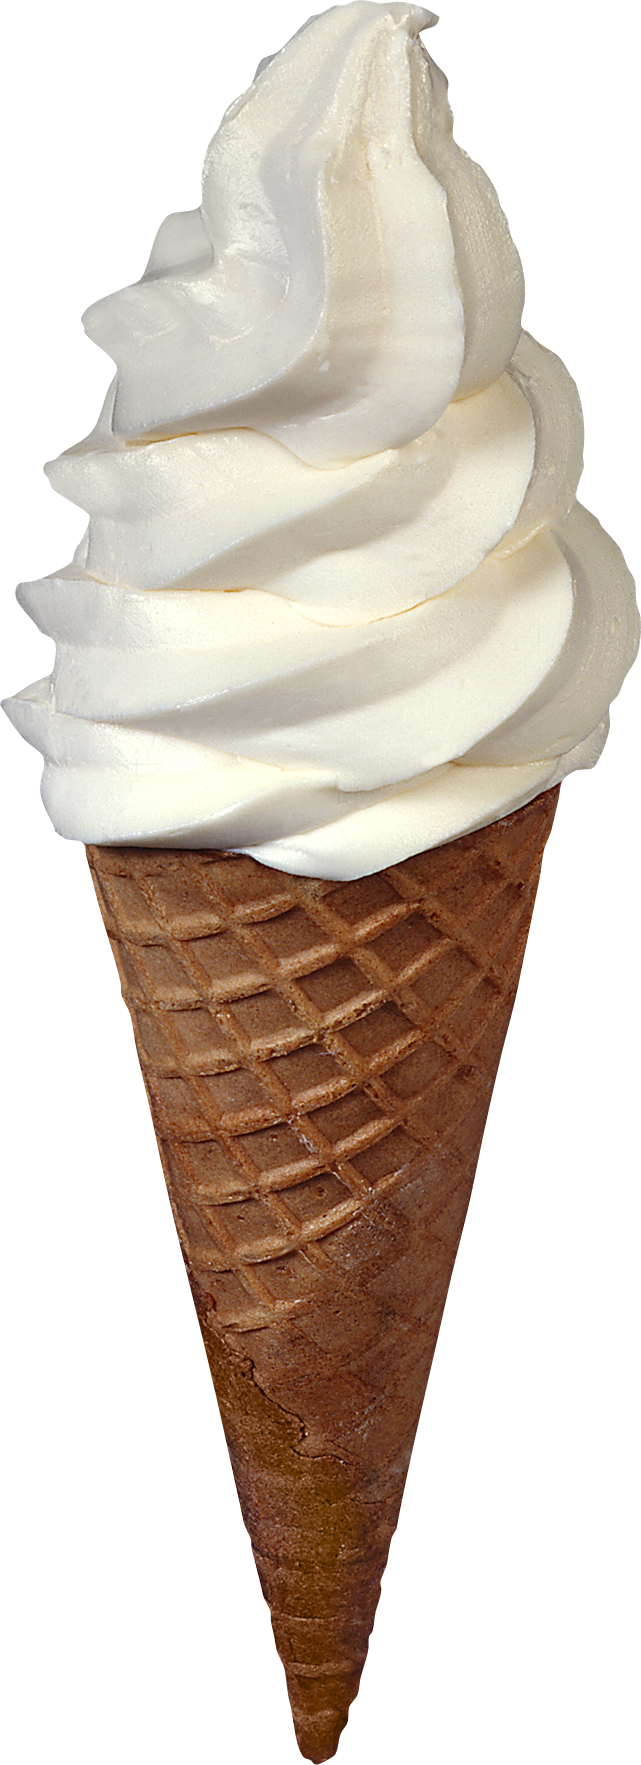 ساده ترین تصویر بستنی قیفی خوشمزه و رایگان با کیفیت بالا 